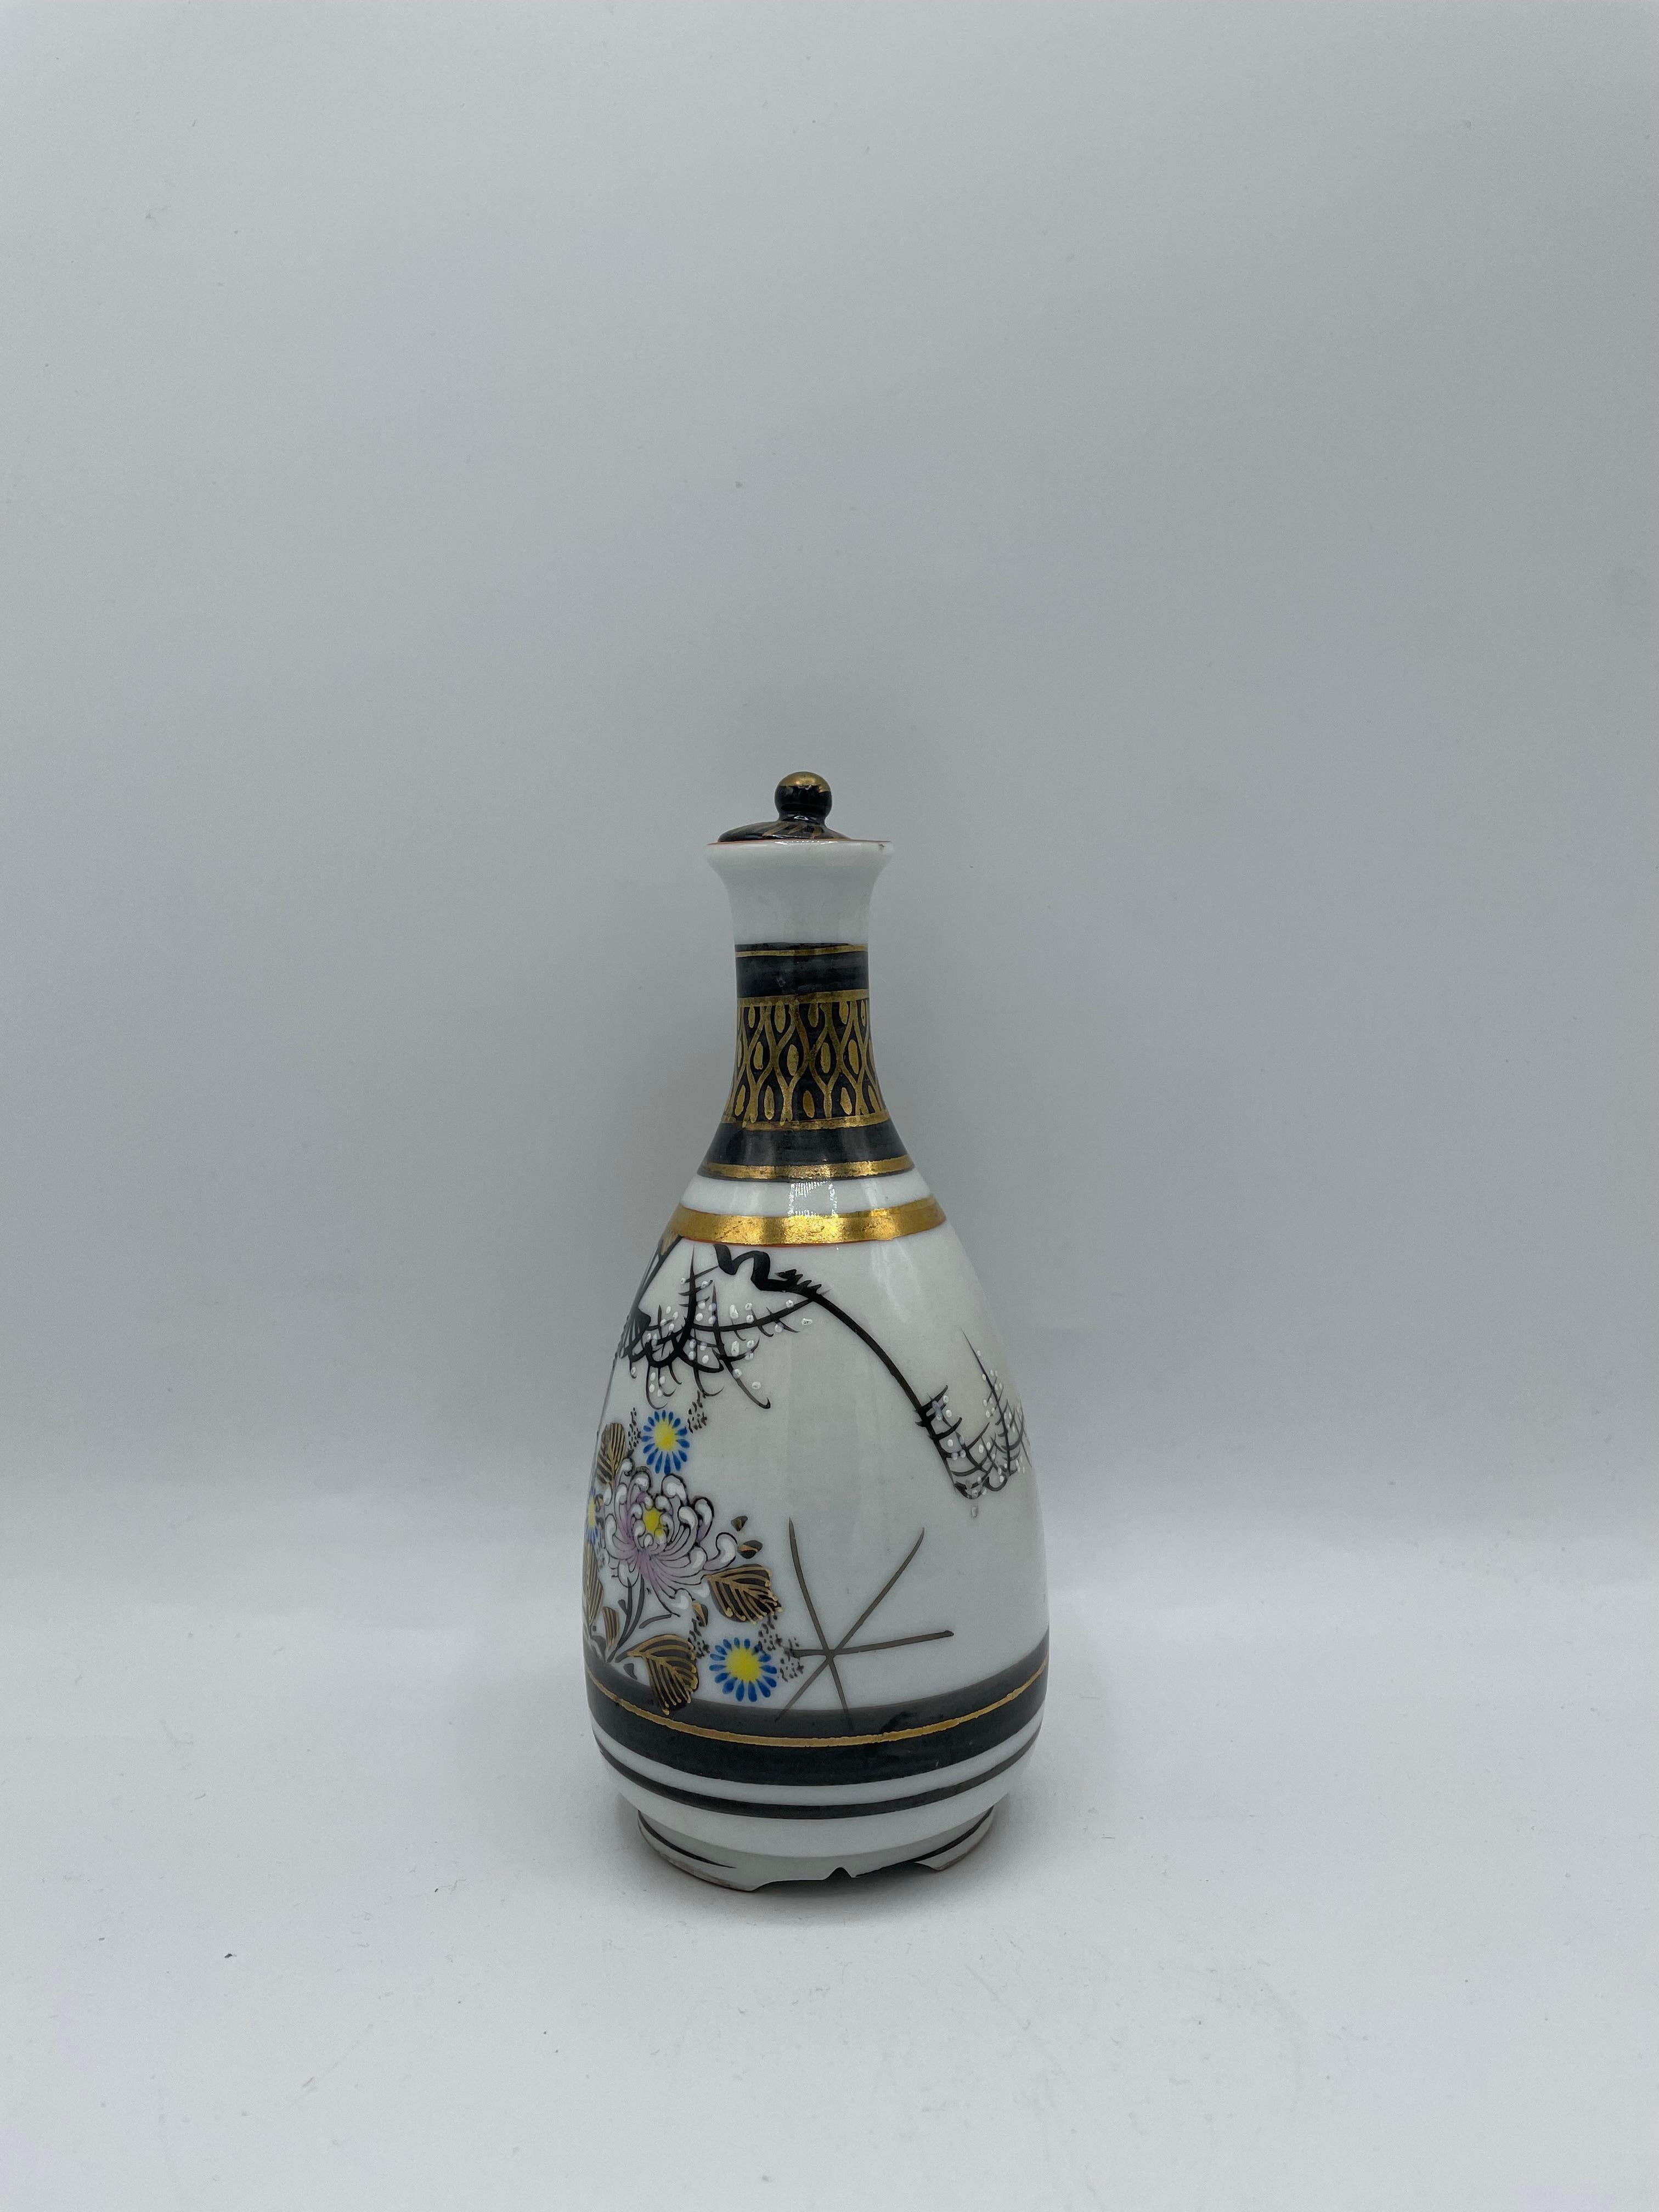 Dies ist eine Sake-Flasche, die auf Japanisch 'tokkuri' genannt wird.
Diese Tokkuri besteht aus Porzellan und ist handbemalt.
Es wurde in der Showa-Ära in den 1970er Jahren hergestellt.
Das Design ist eine Landschaft aus japanischen Fächern und